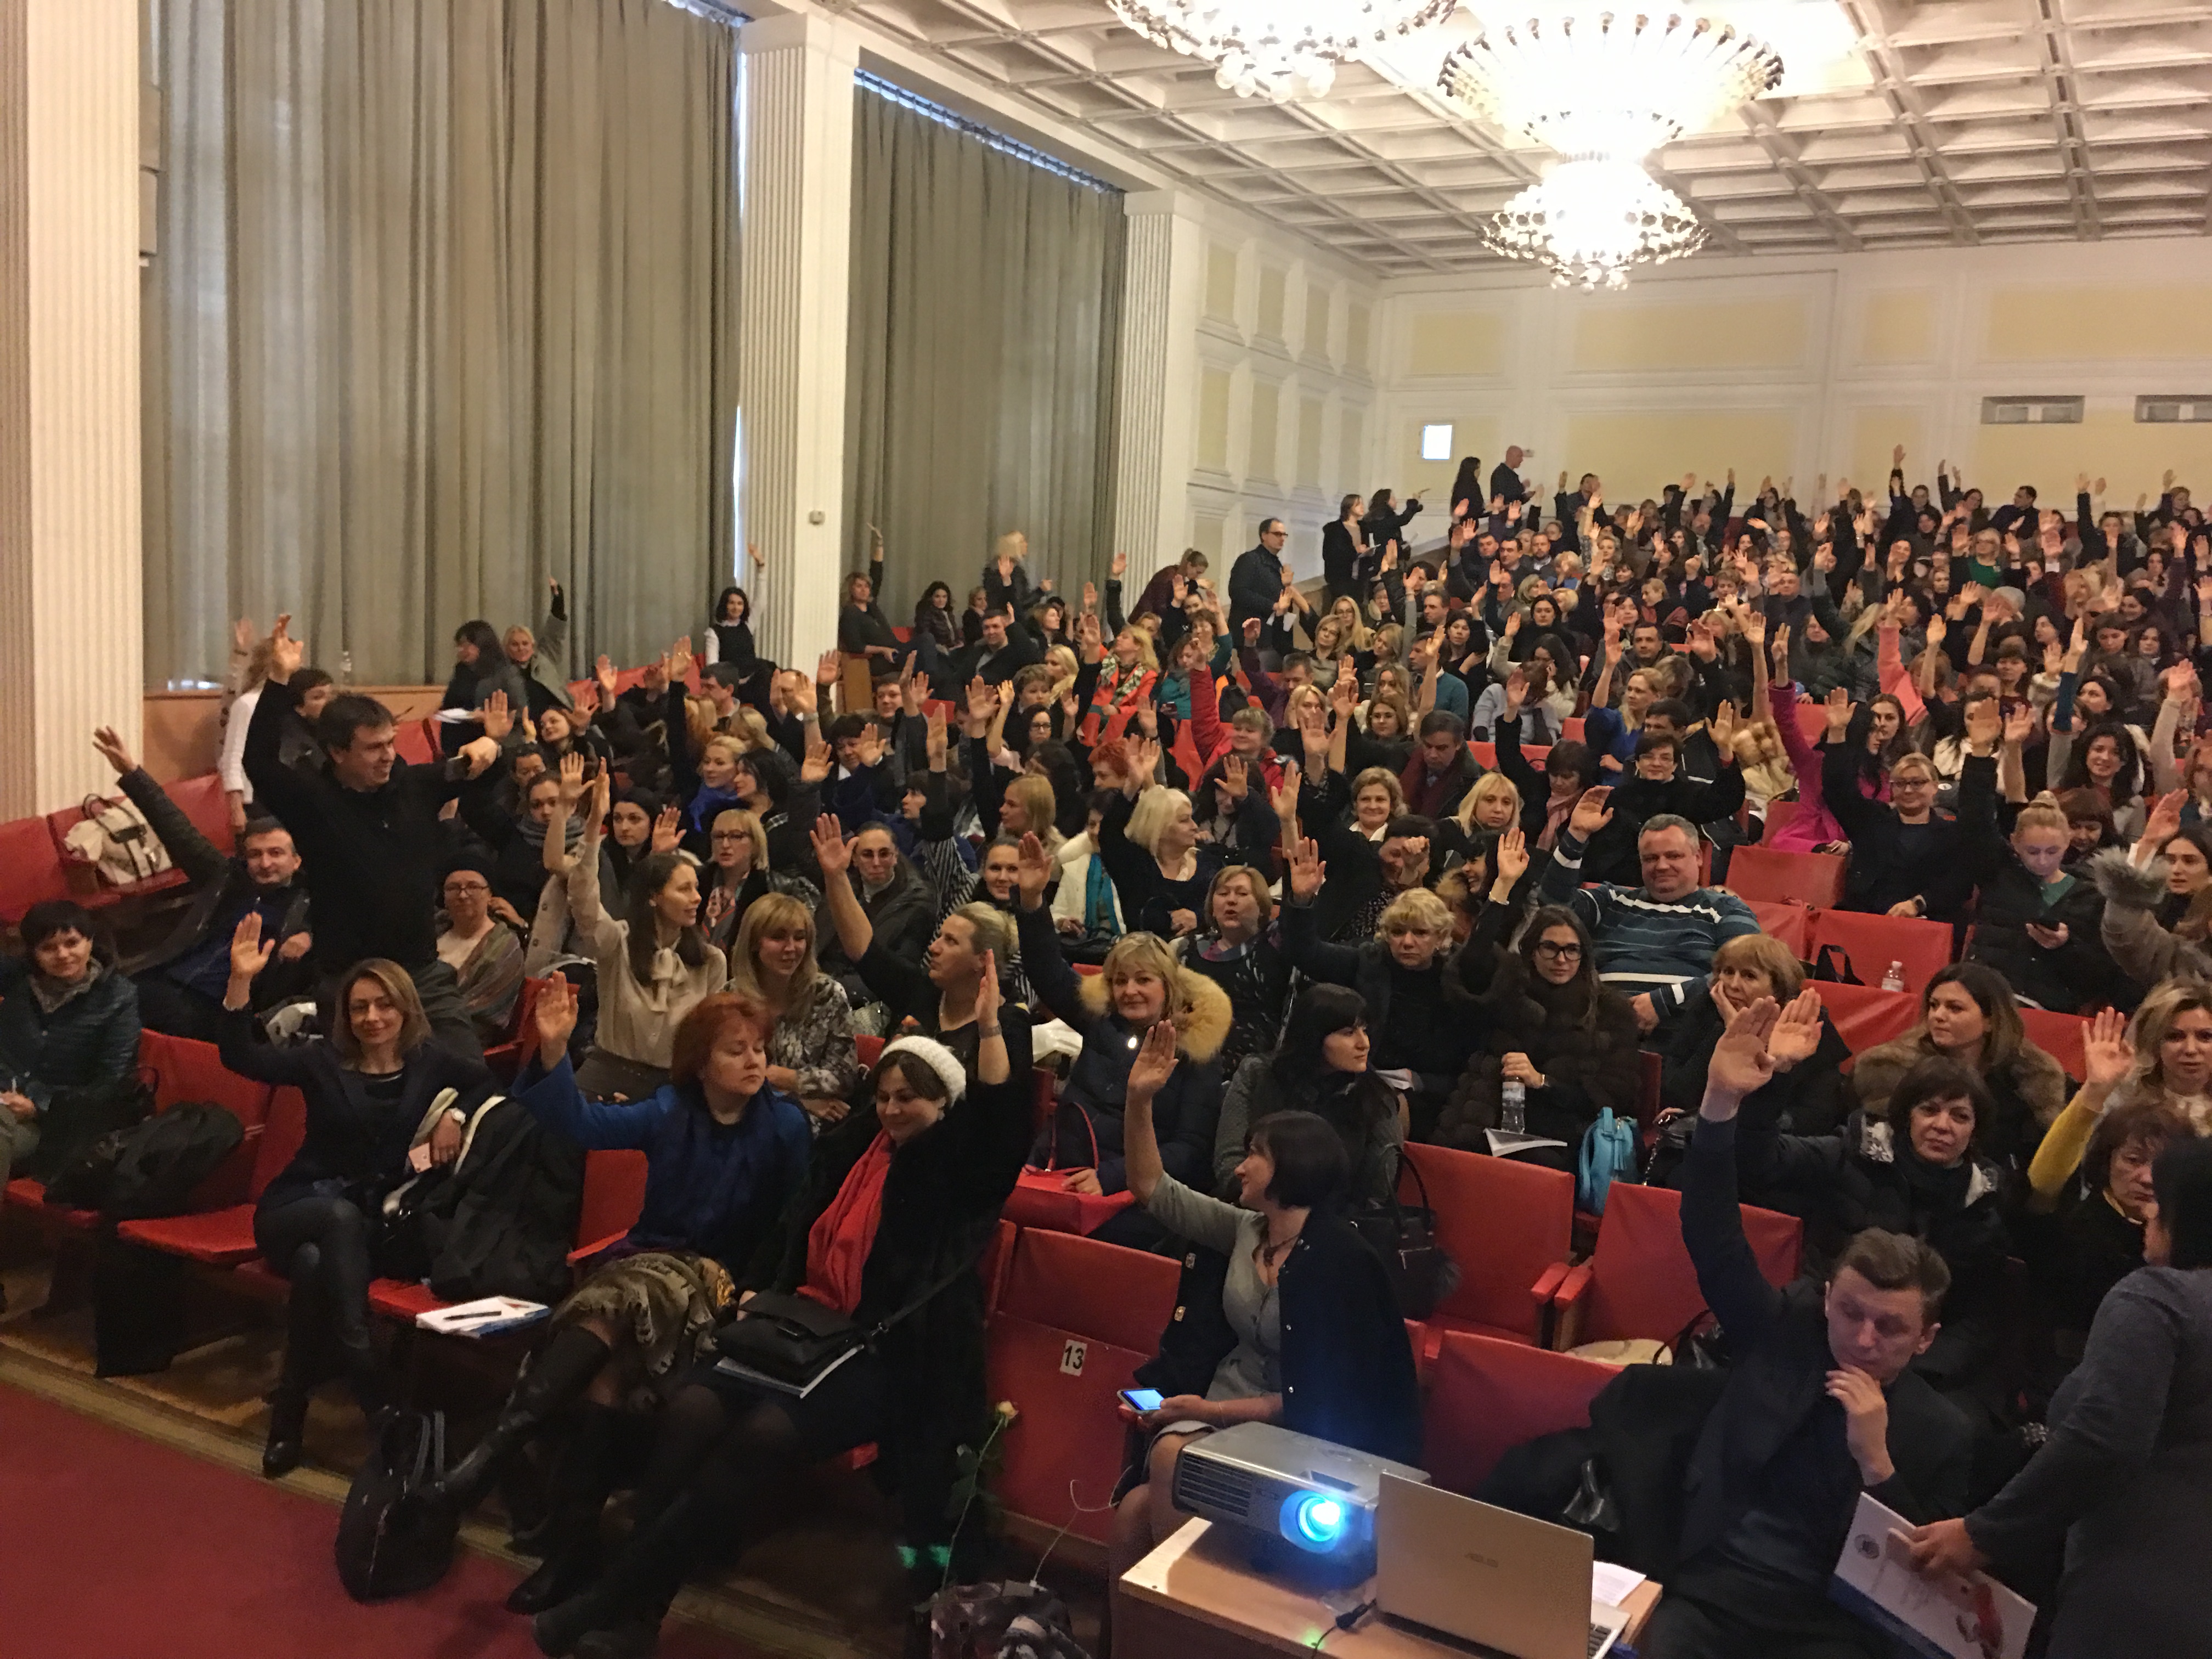    24 лютого 2017 року відбулися загальні збори нотаріусів міста Києва. Участь взяв президент Нотаріальної палати України Володимир Марченко.
